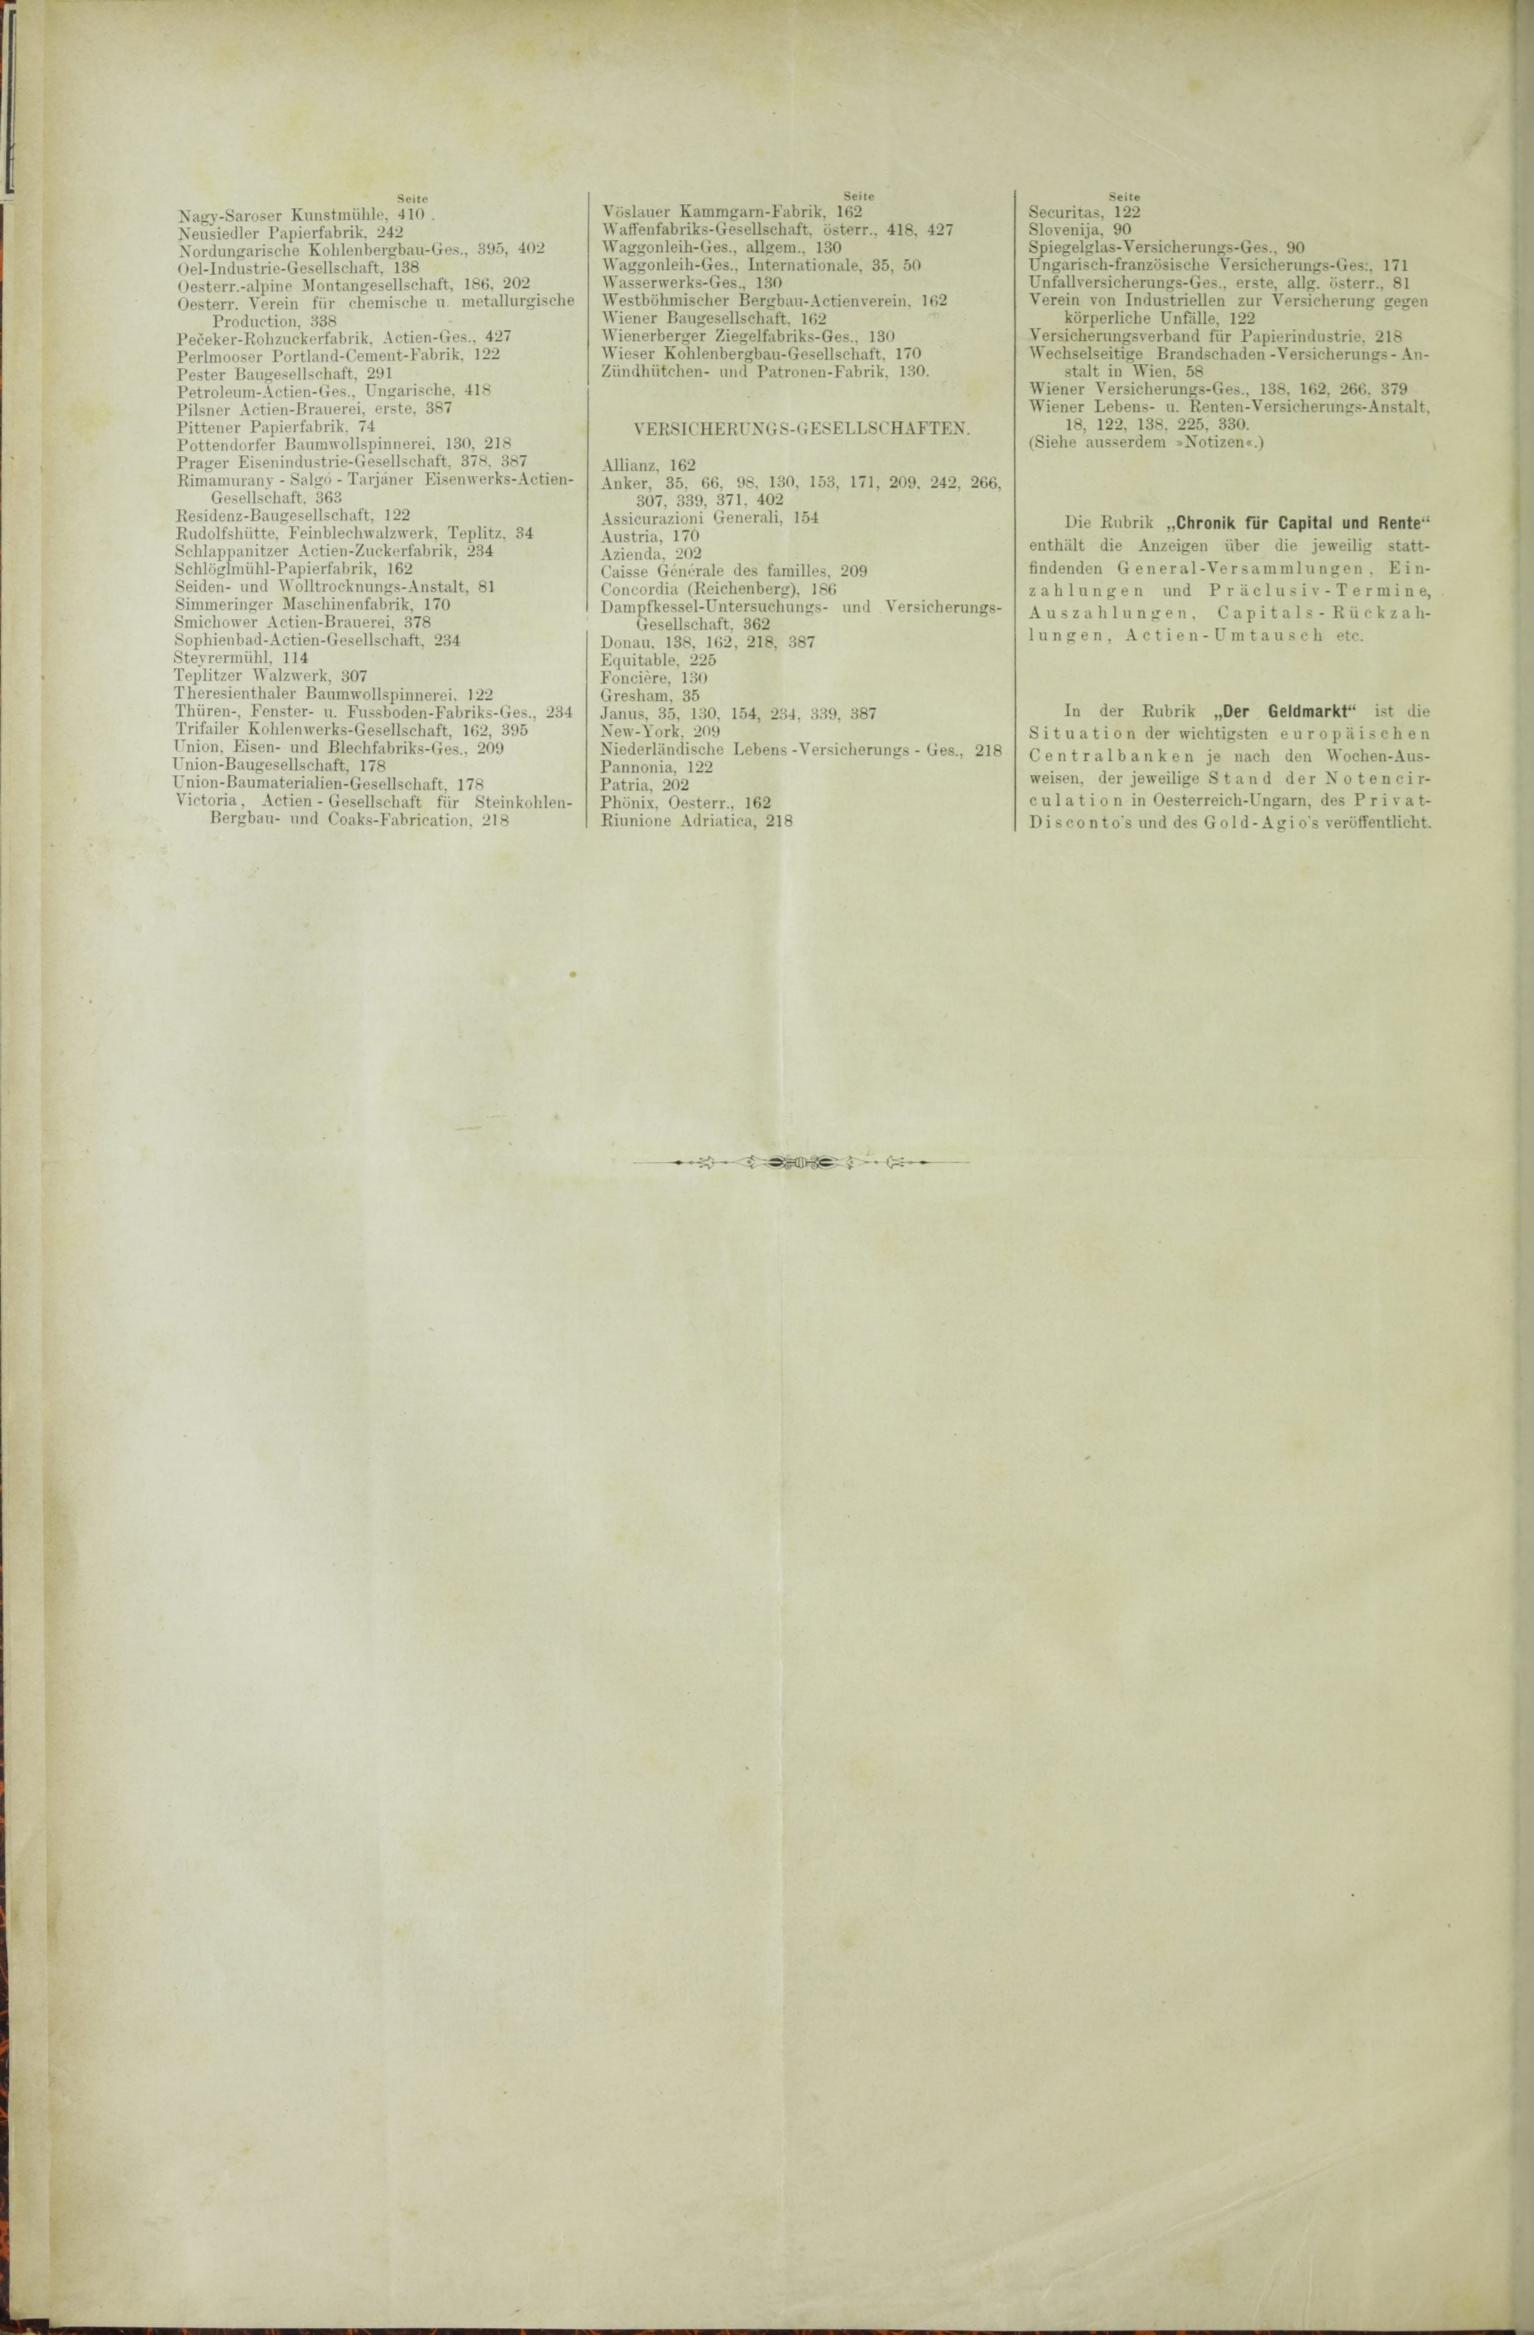 Der Tresor 11.06.1885 - Seite 12